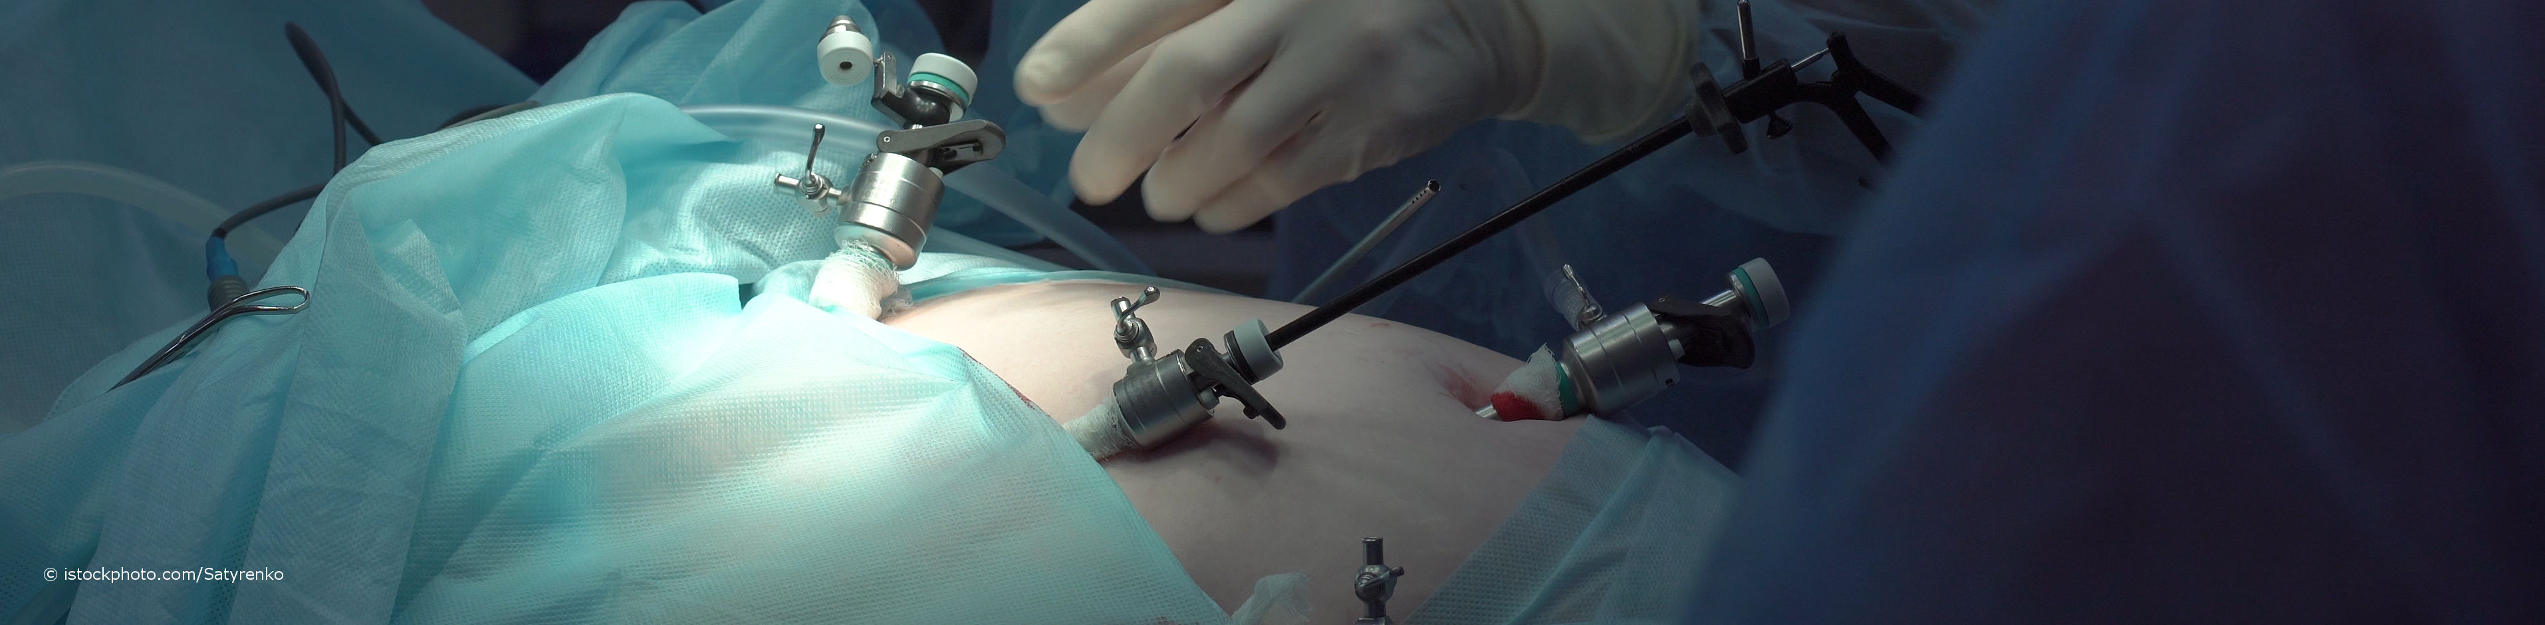 Arzt für Viszeralchirurgie schiebt bei der Bauchspiegelung ein Laparoskop durch einen Trokar in den durch eingeleitetes Gas aufgeblähten Bauch des Patienten.